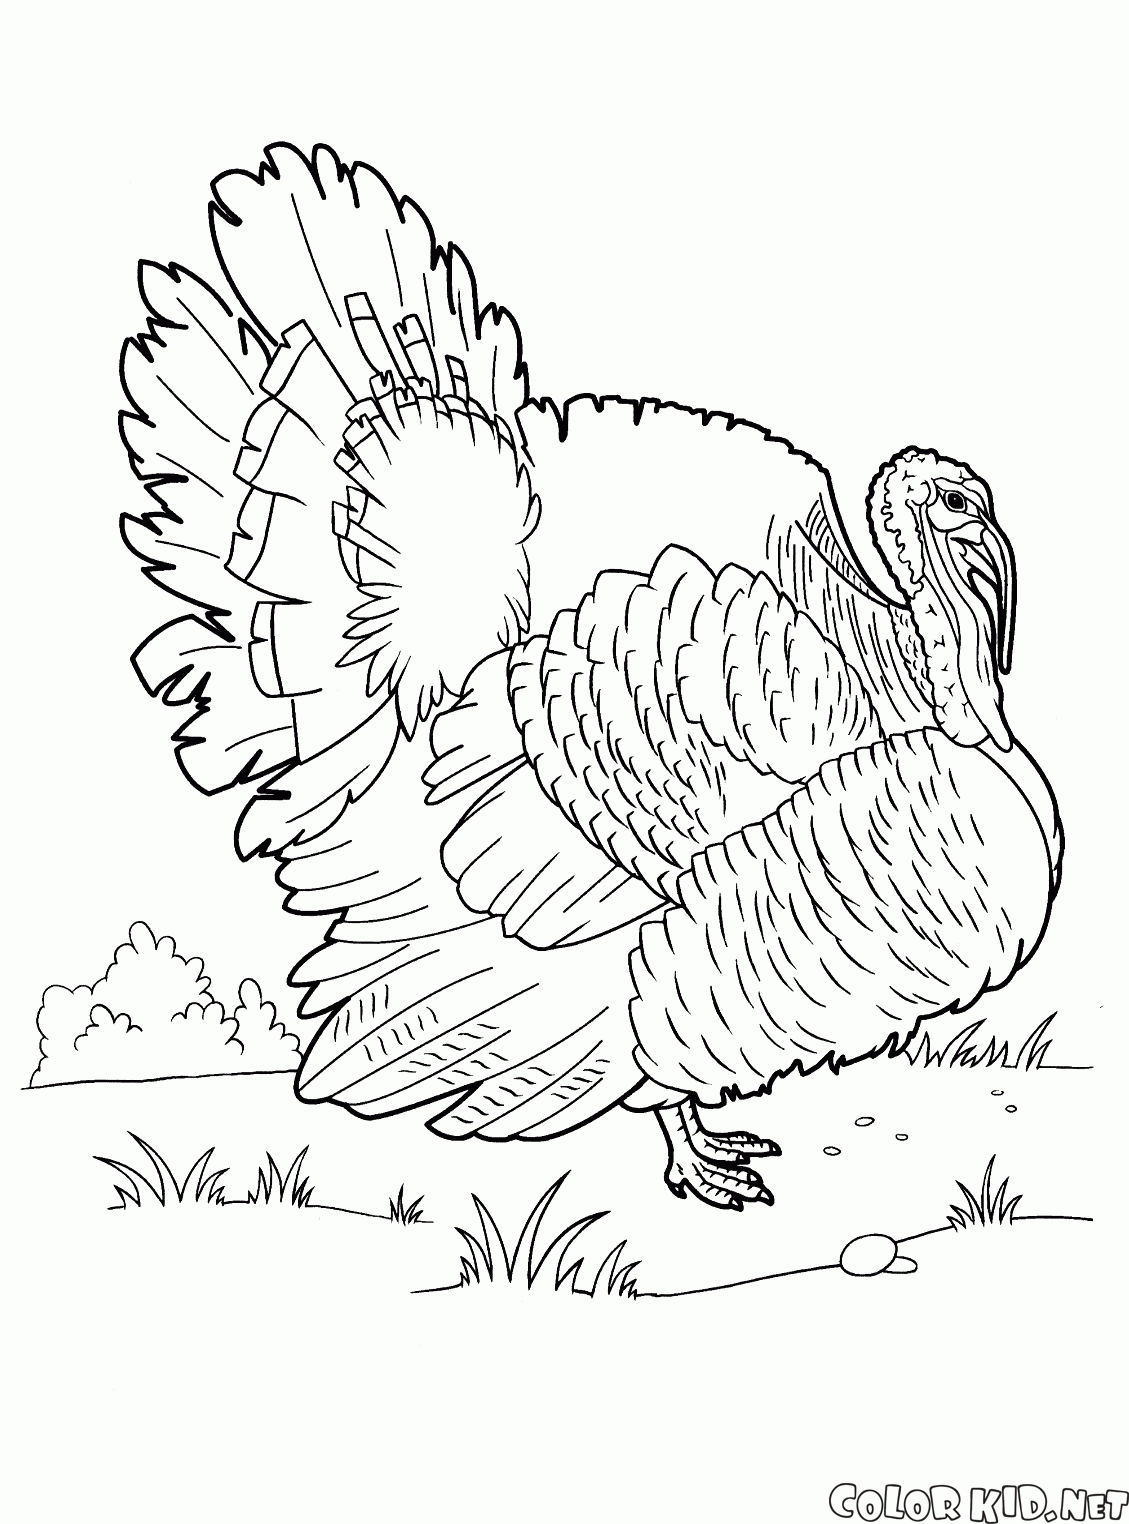 The turkey on a walk